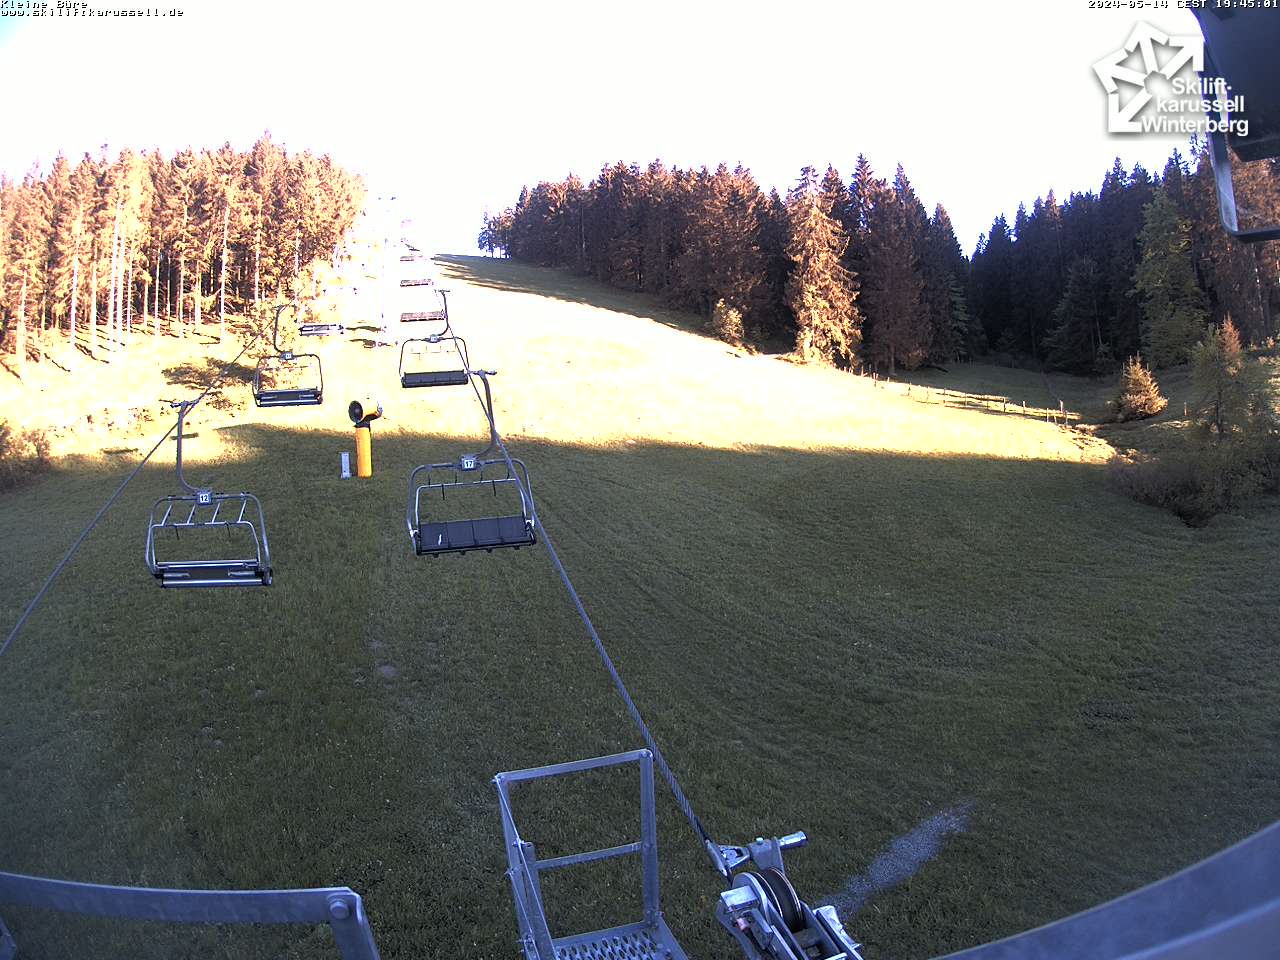 bergfex - Webcam Kleine Büre - Skiliftkarussell Winterberg - Cam Blick von der Bergstation. - Livecam